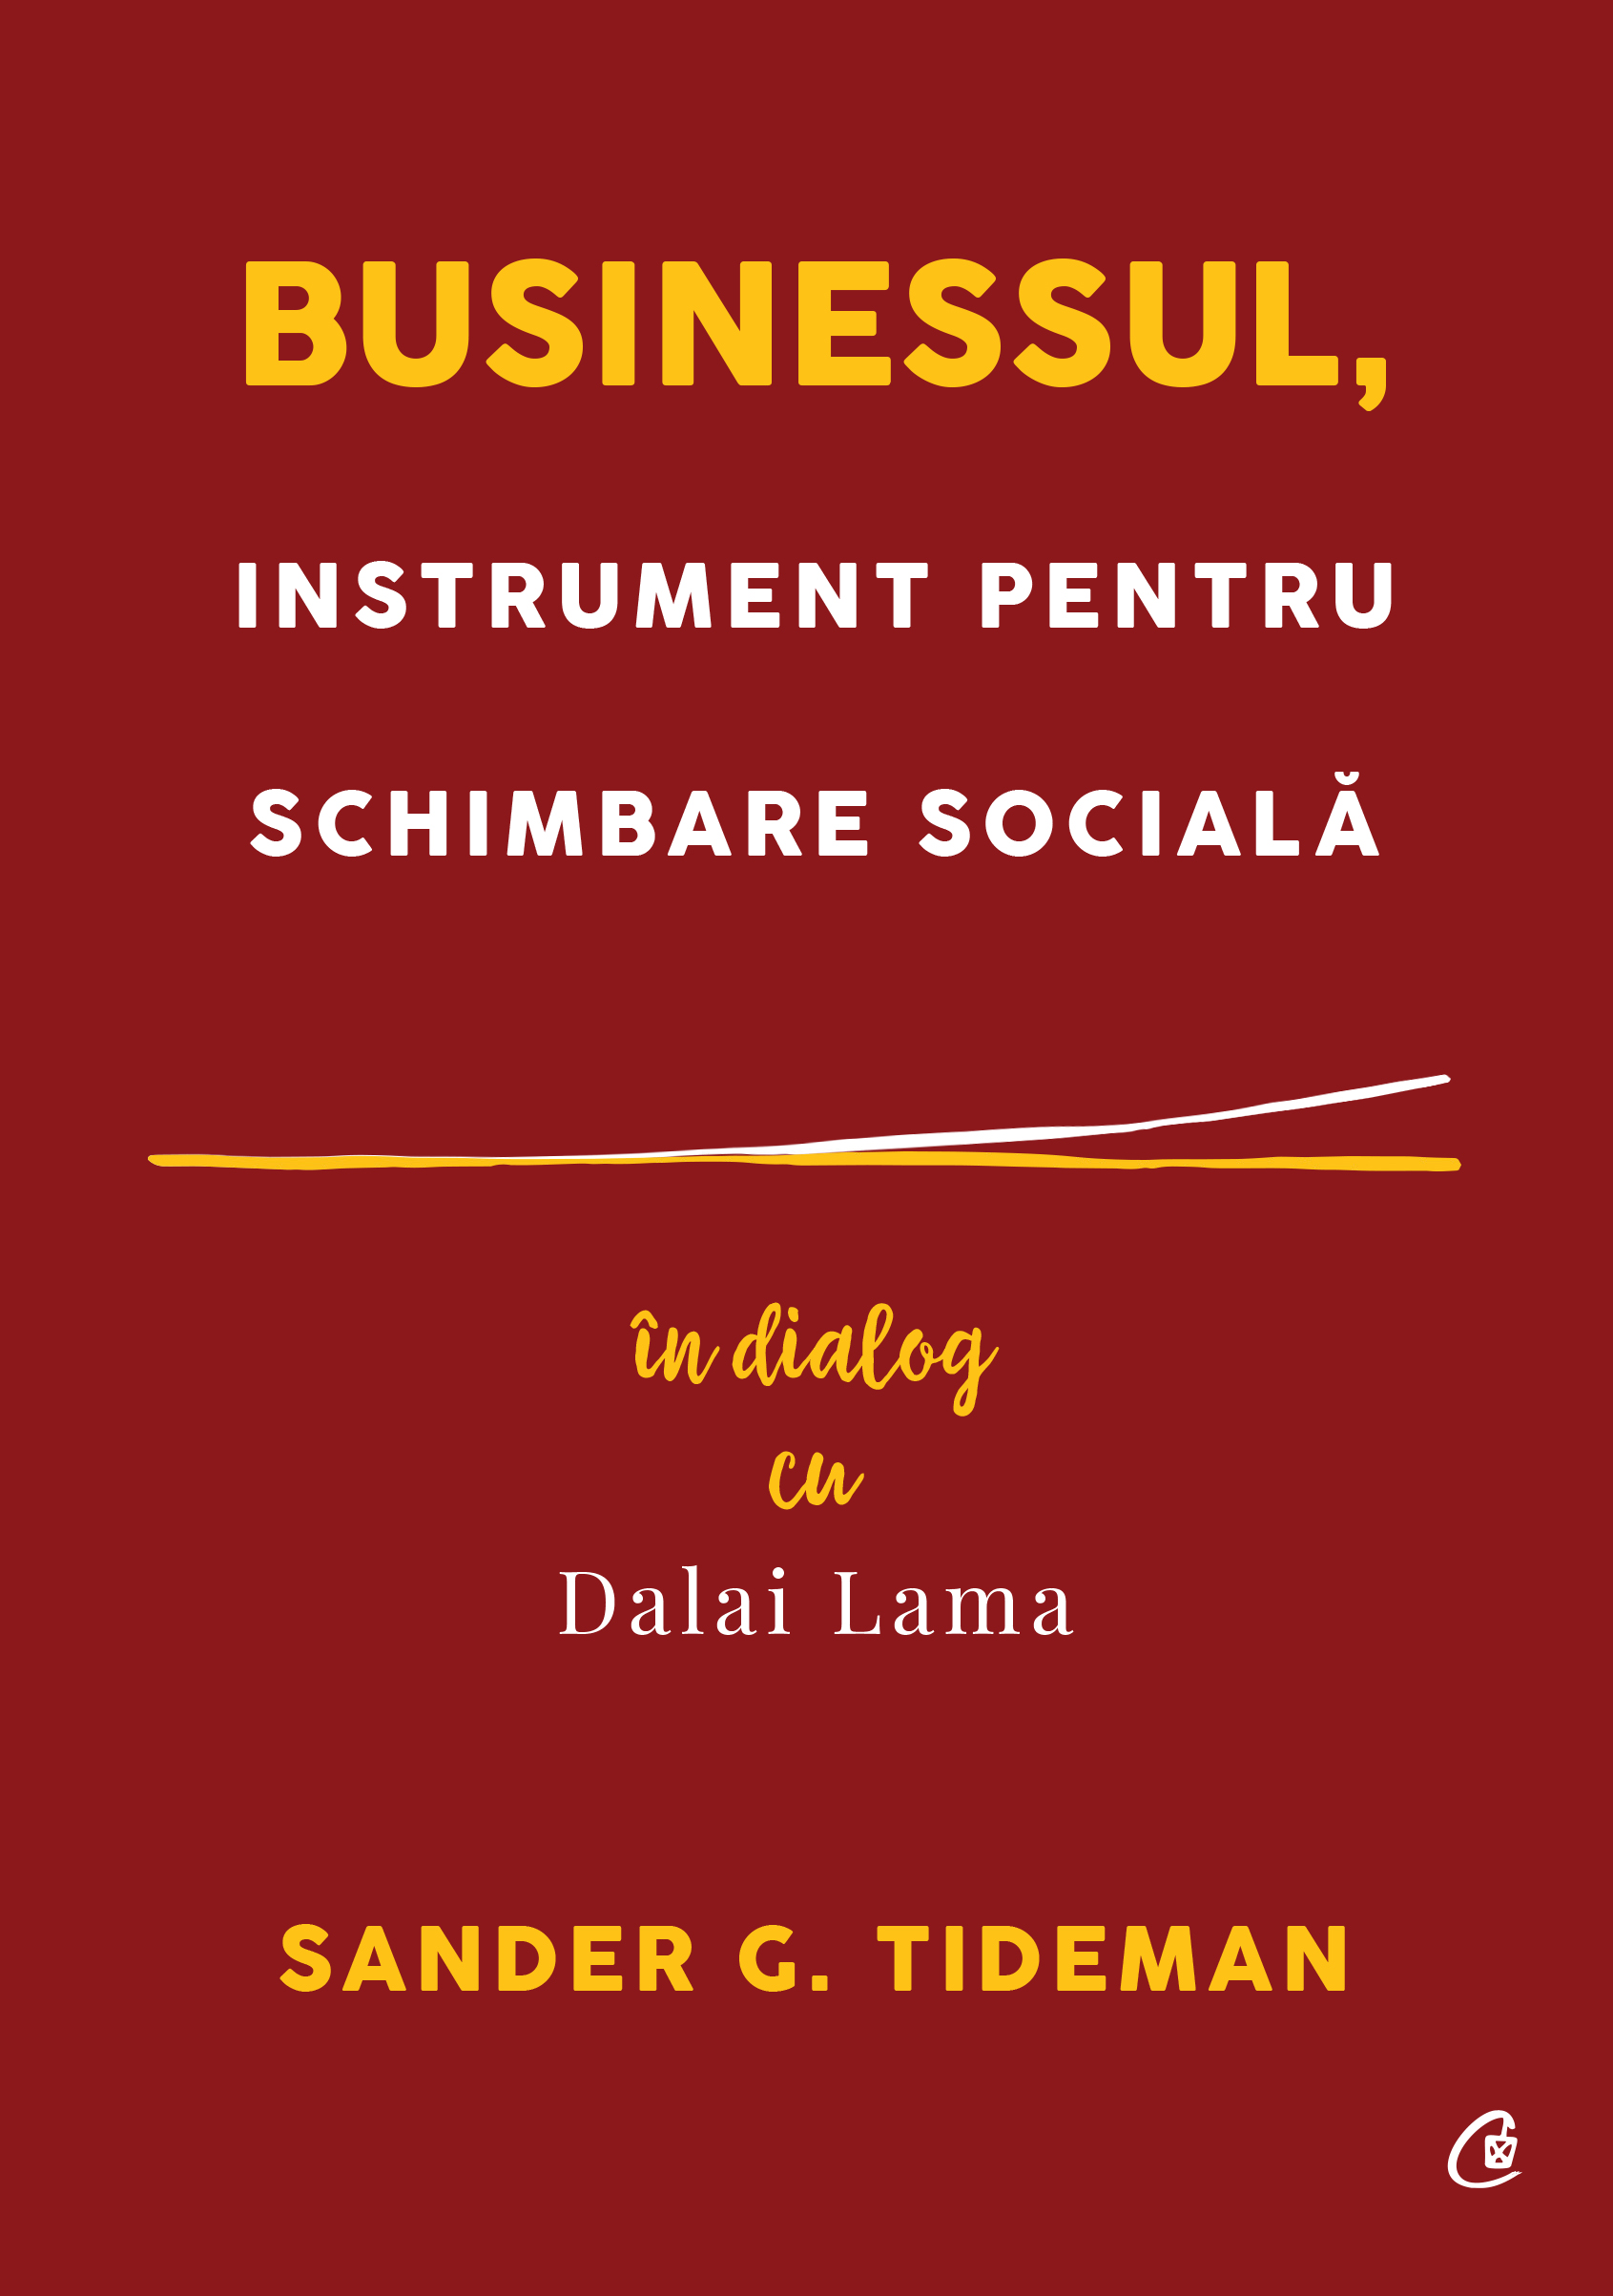 Businessul, instrument pentru schimbare sociala | Sander G. Tideman Businessul